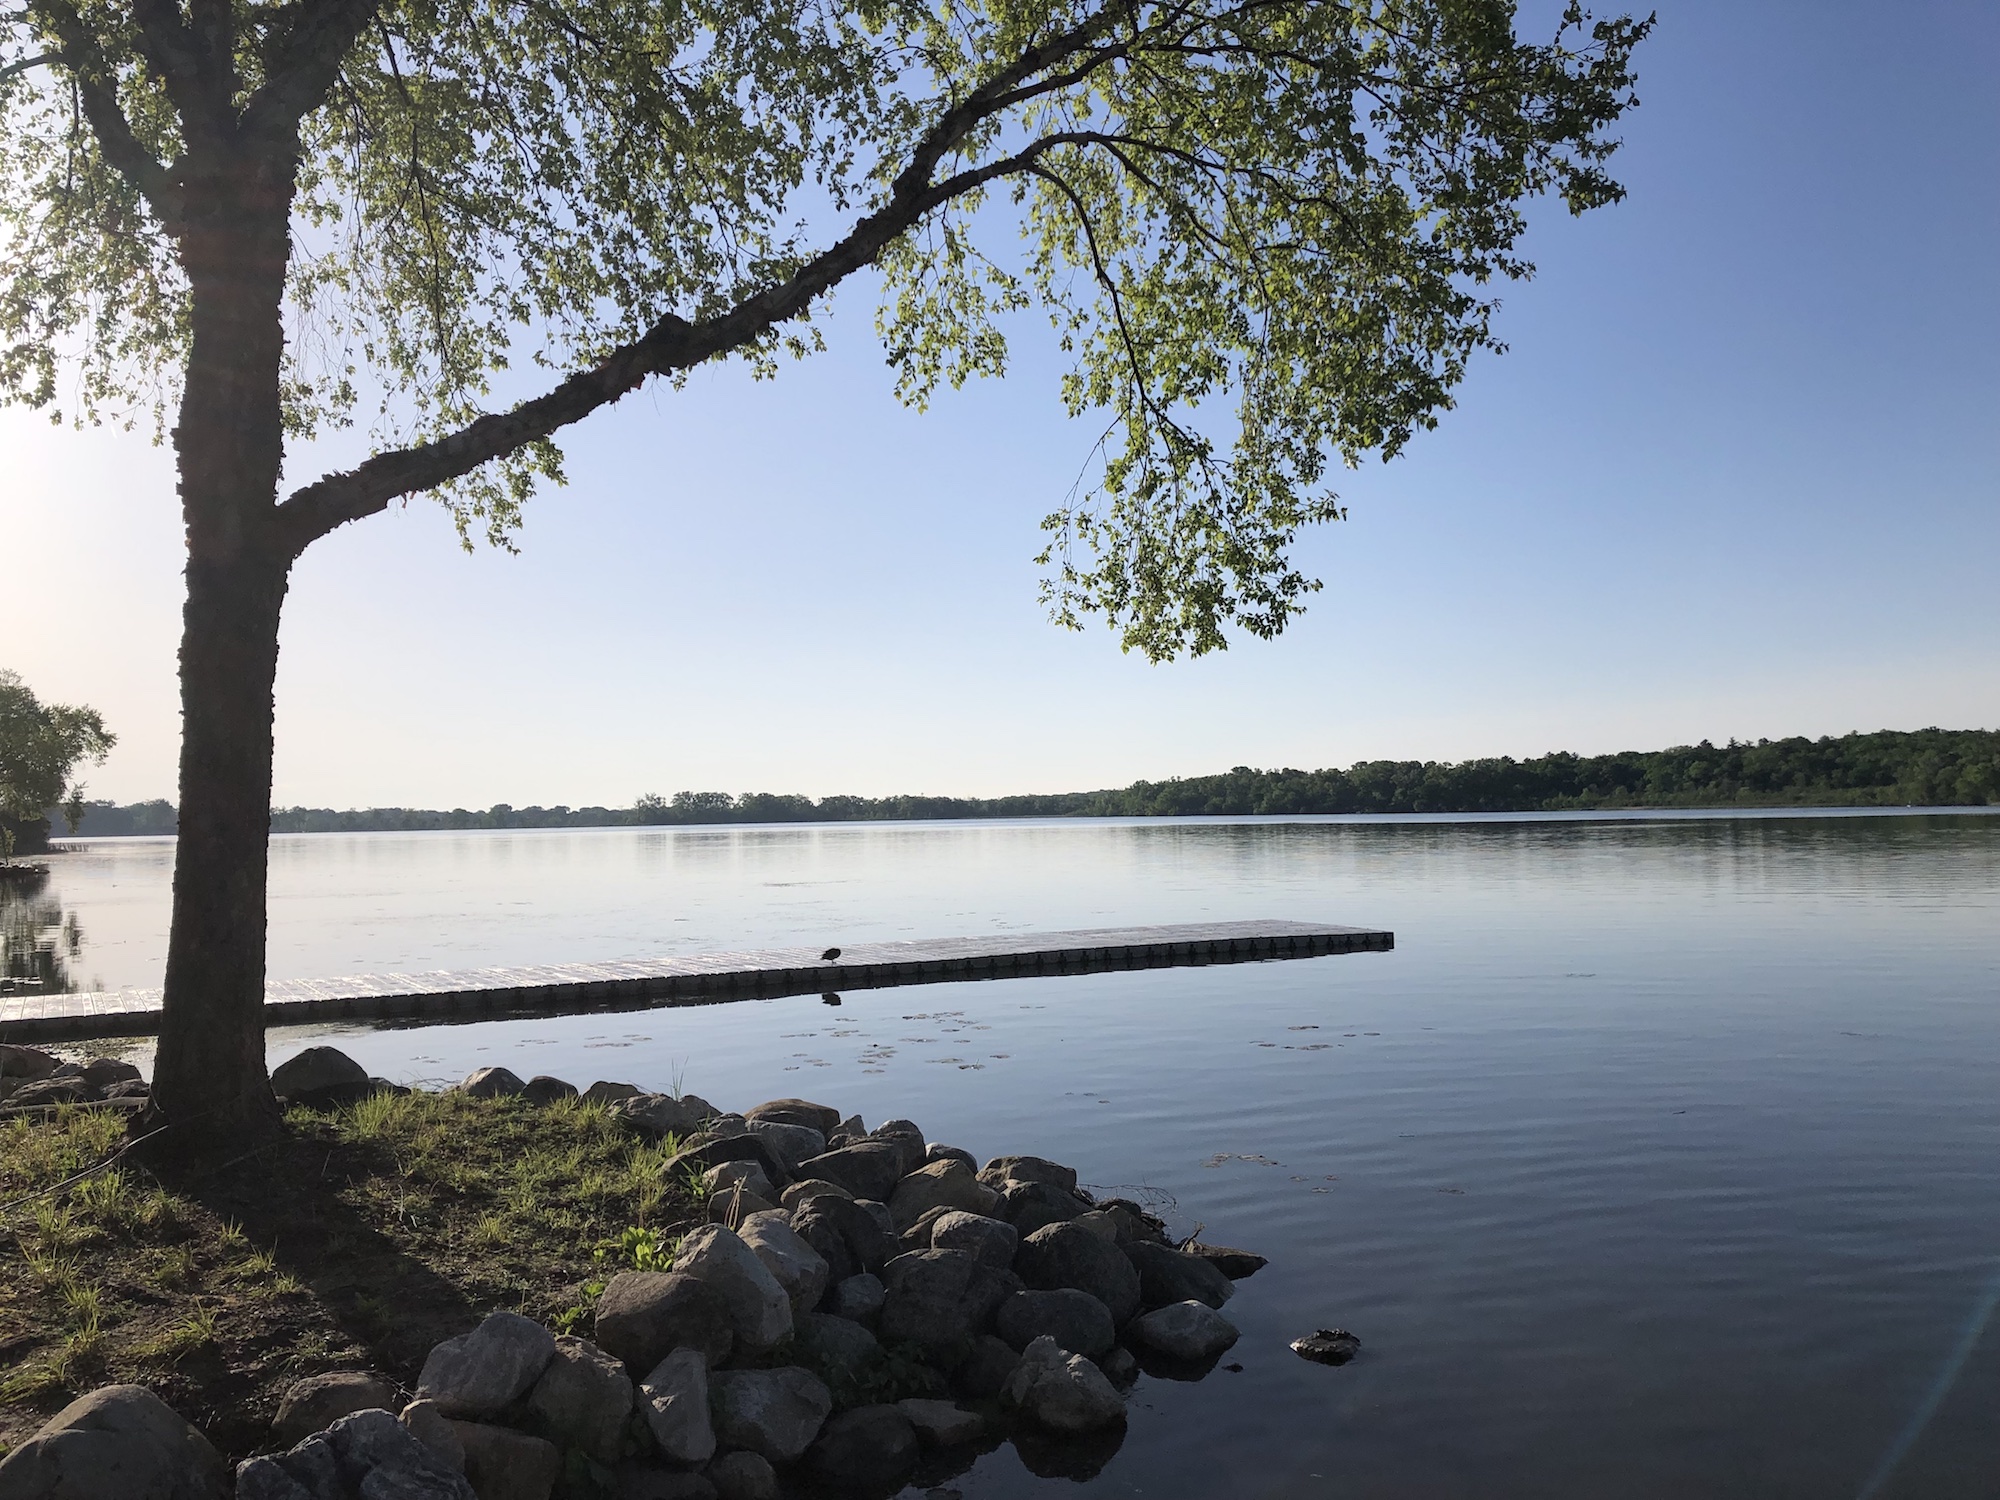 Lake Wingra on June 2, 2019.